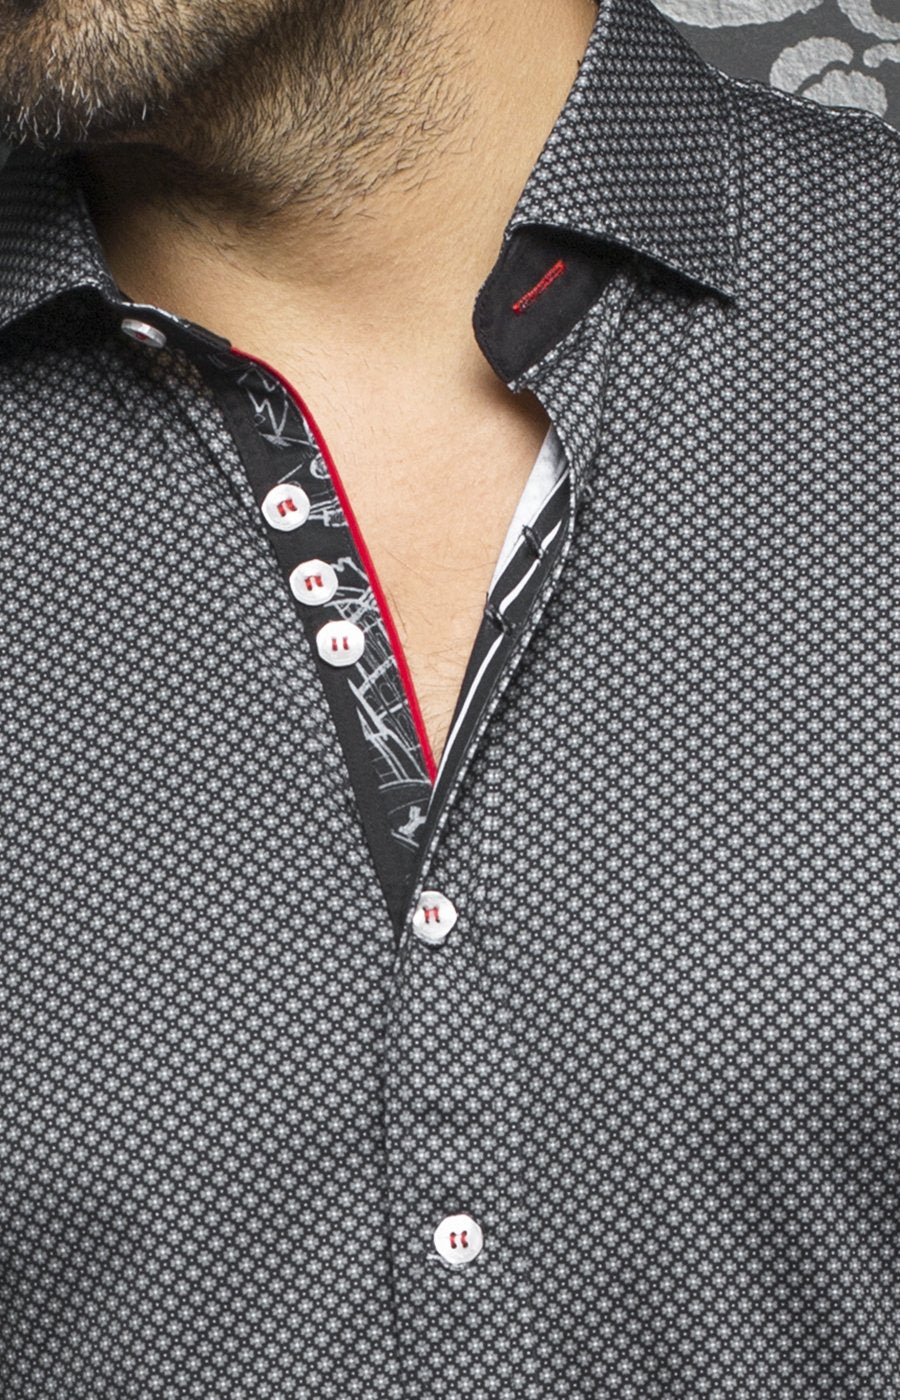 Chemise manches longues en Knit Au Noir - O'CONNOR black - Machemise.ca , Inventaire complet de la marque Au Noir